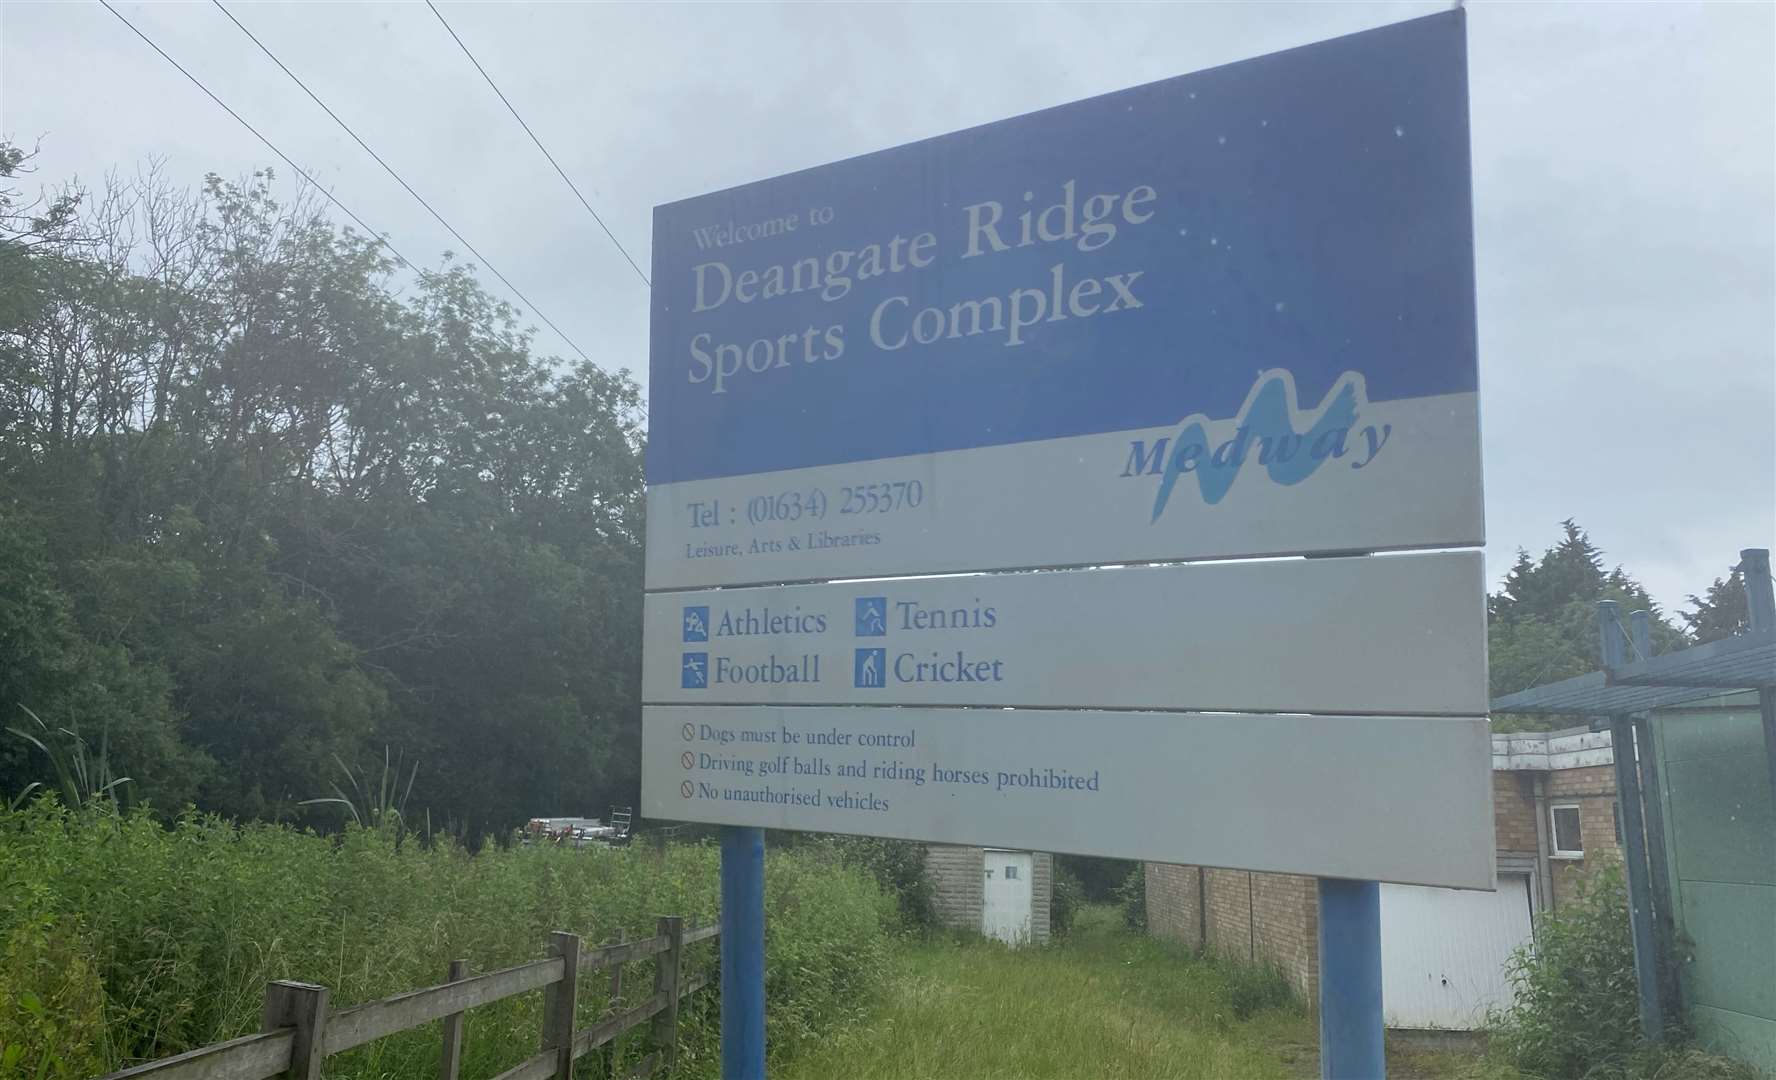 Deangate Ridge Sports Complex